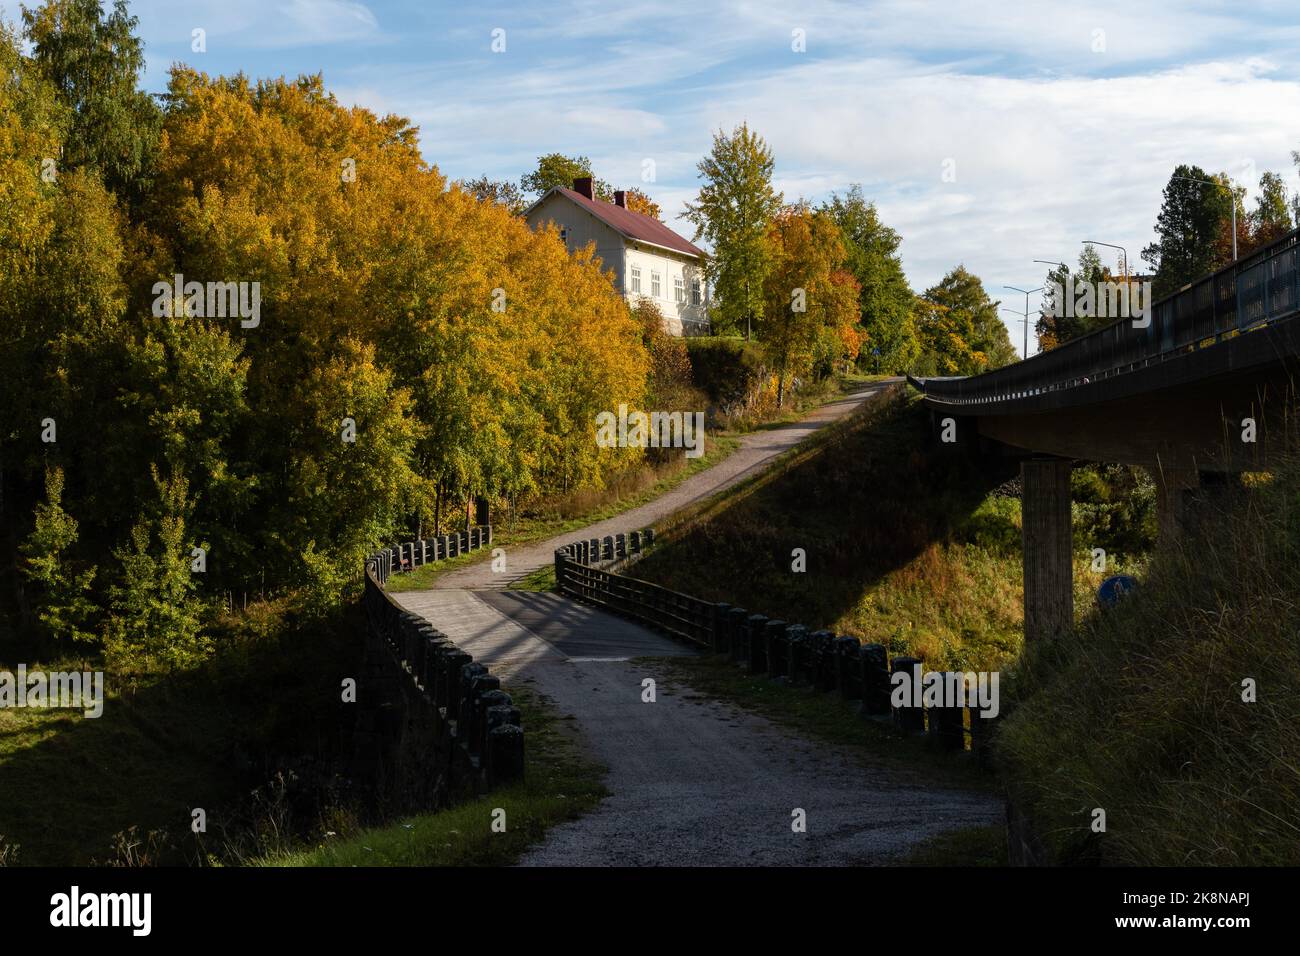 Puente antiguo Halikko, construido en 1866. Histórico puente museo en Salo, Finlandia, con árboles en colores otoñales Foto de stock